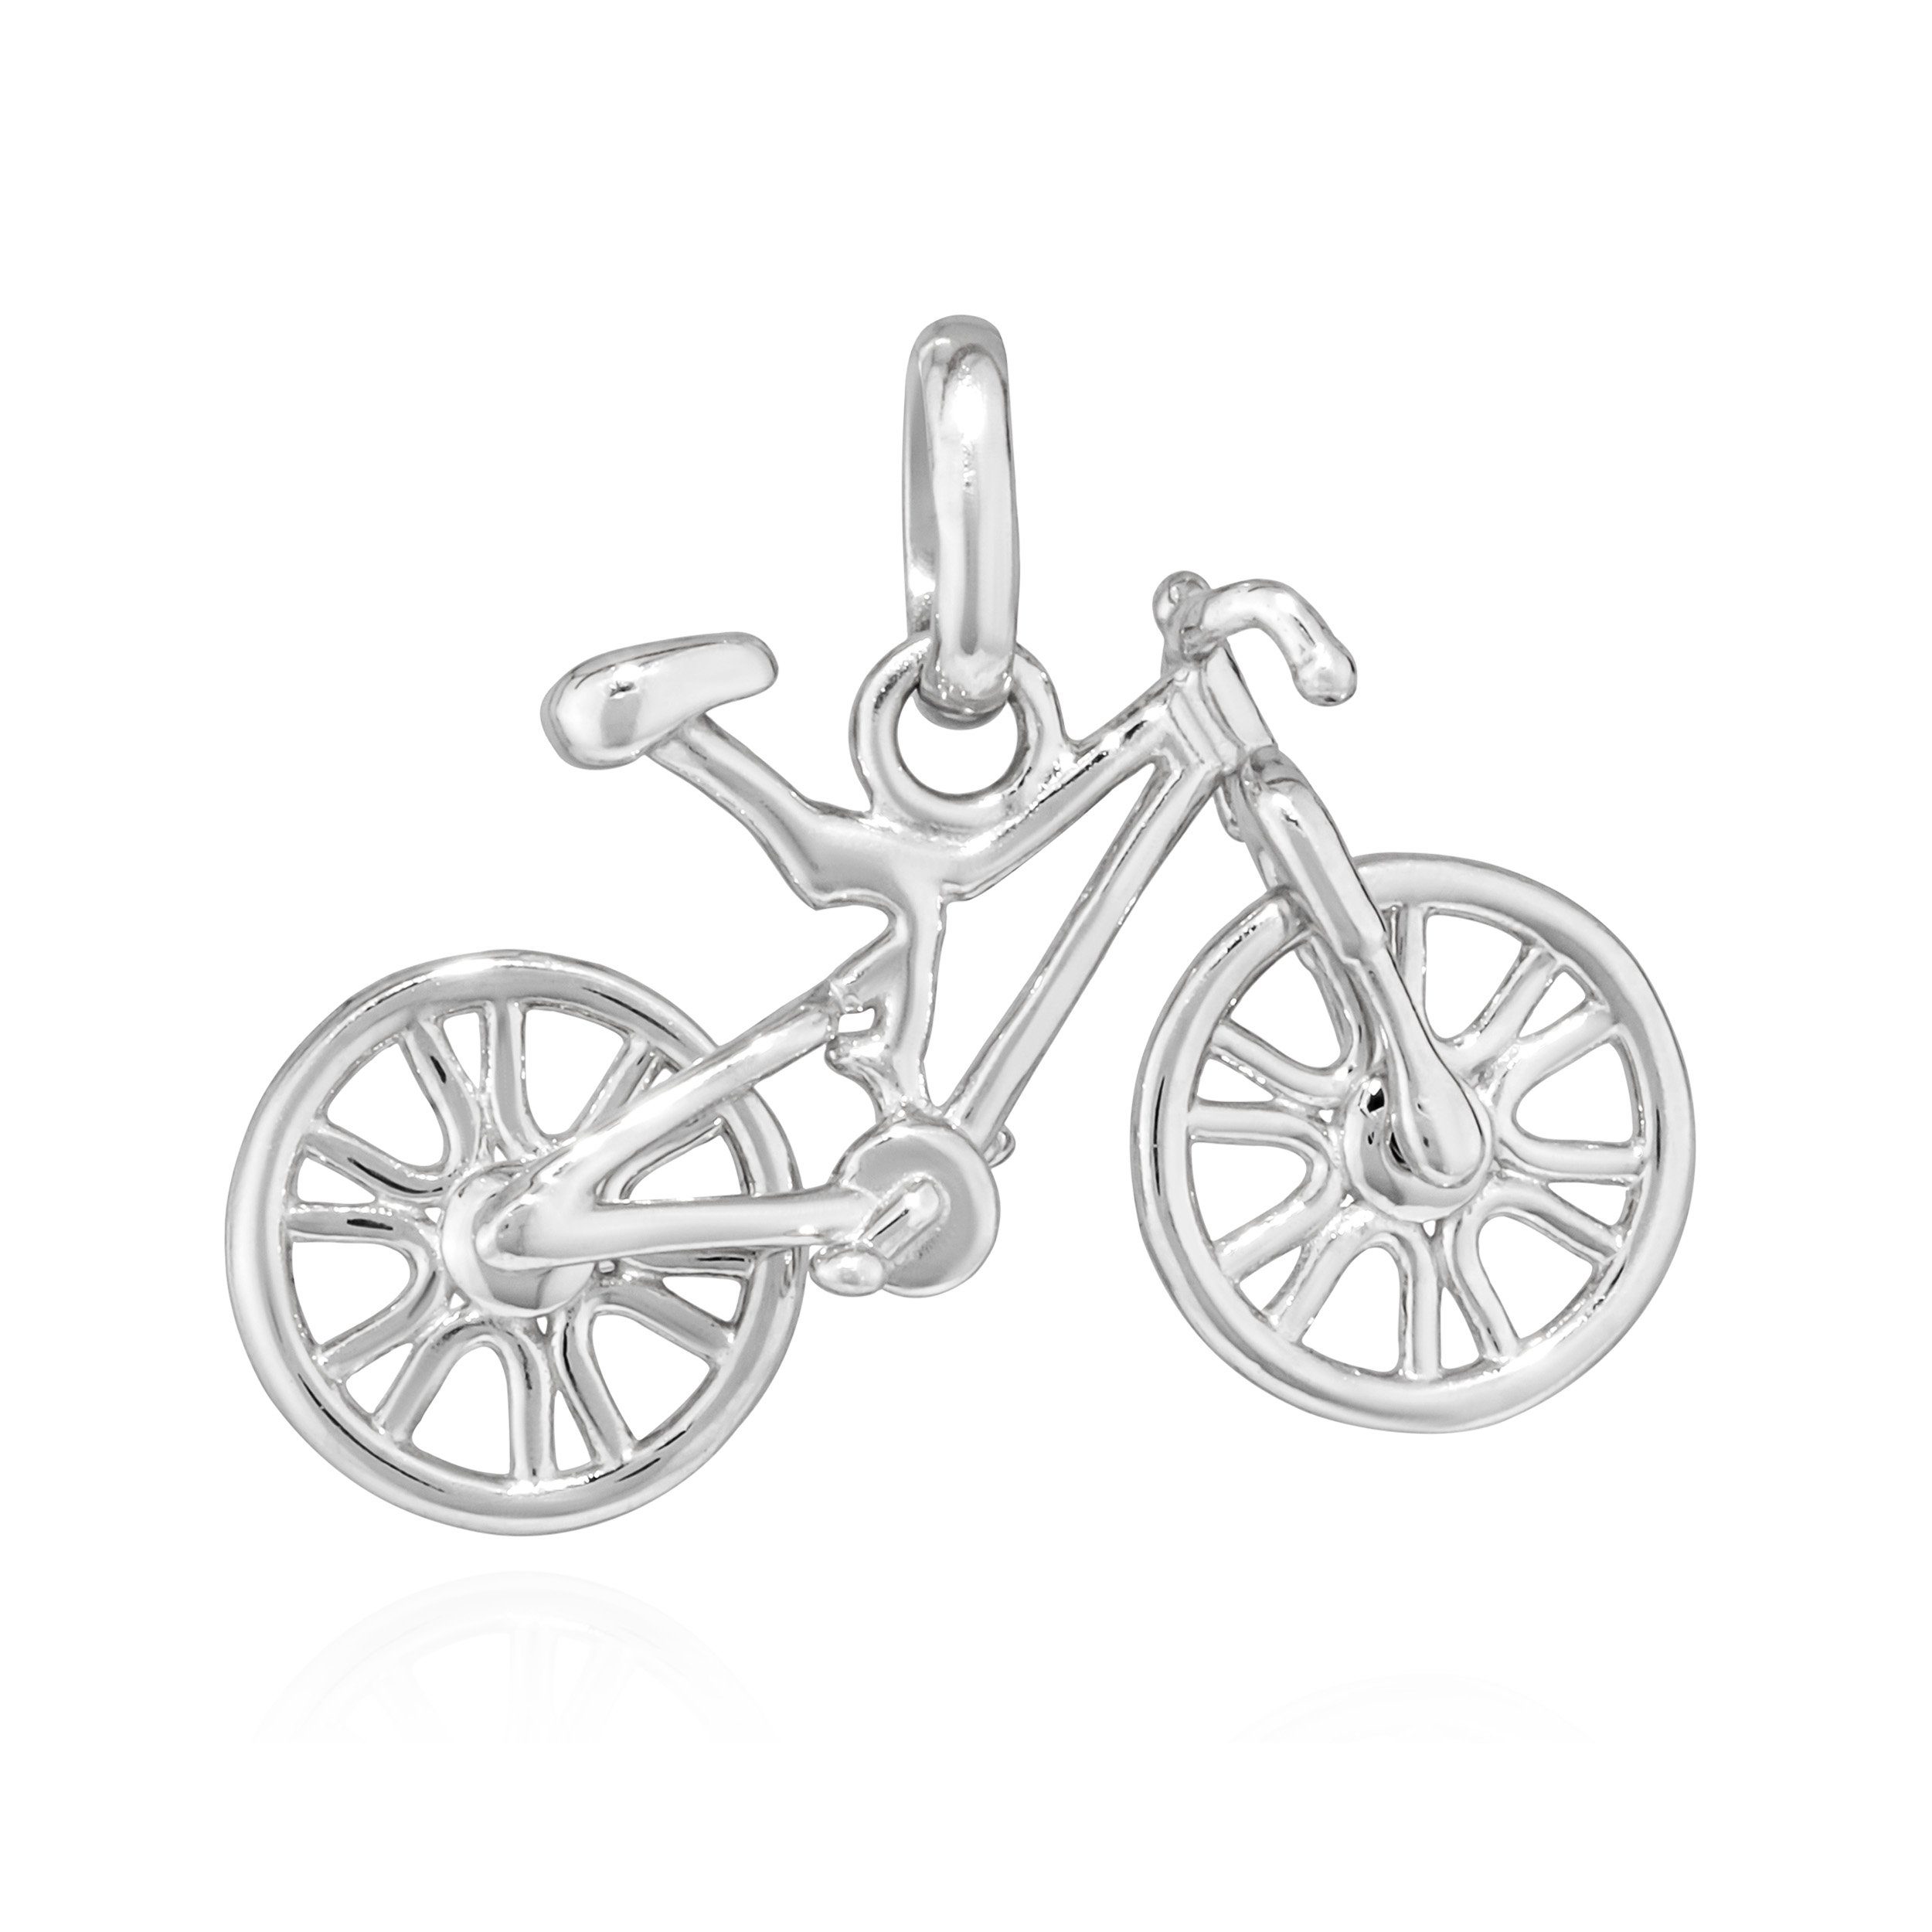 Amulett Kettenanhänger Fahrrad 925 Sterlingsilber A Talisman Kettenanhänger 19x11,5mm NKlaus